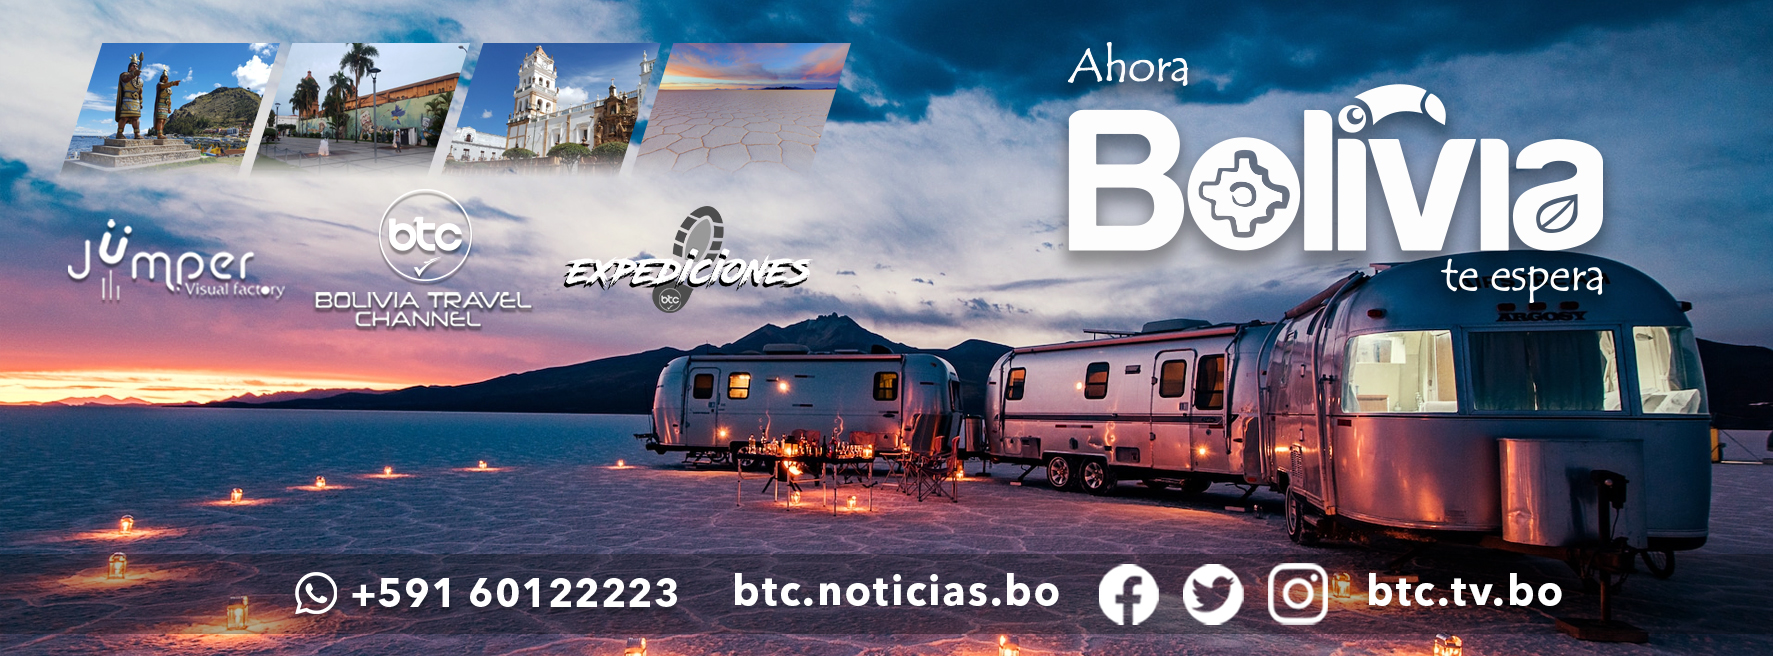 fco travel bolivia